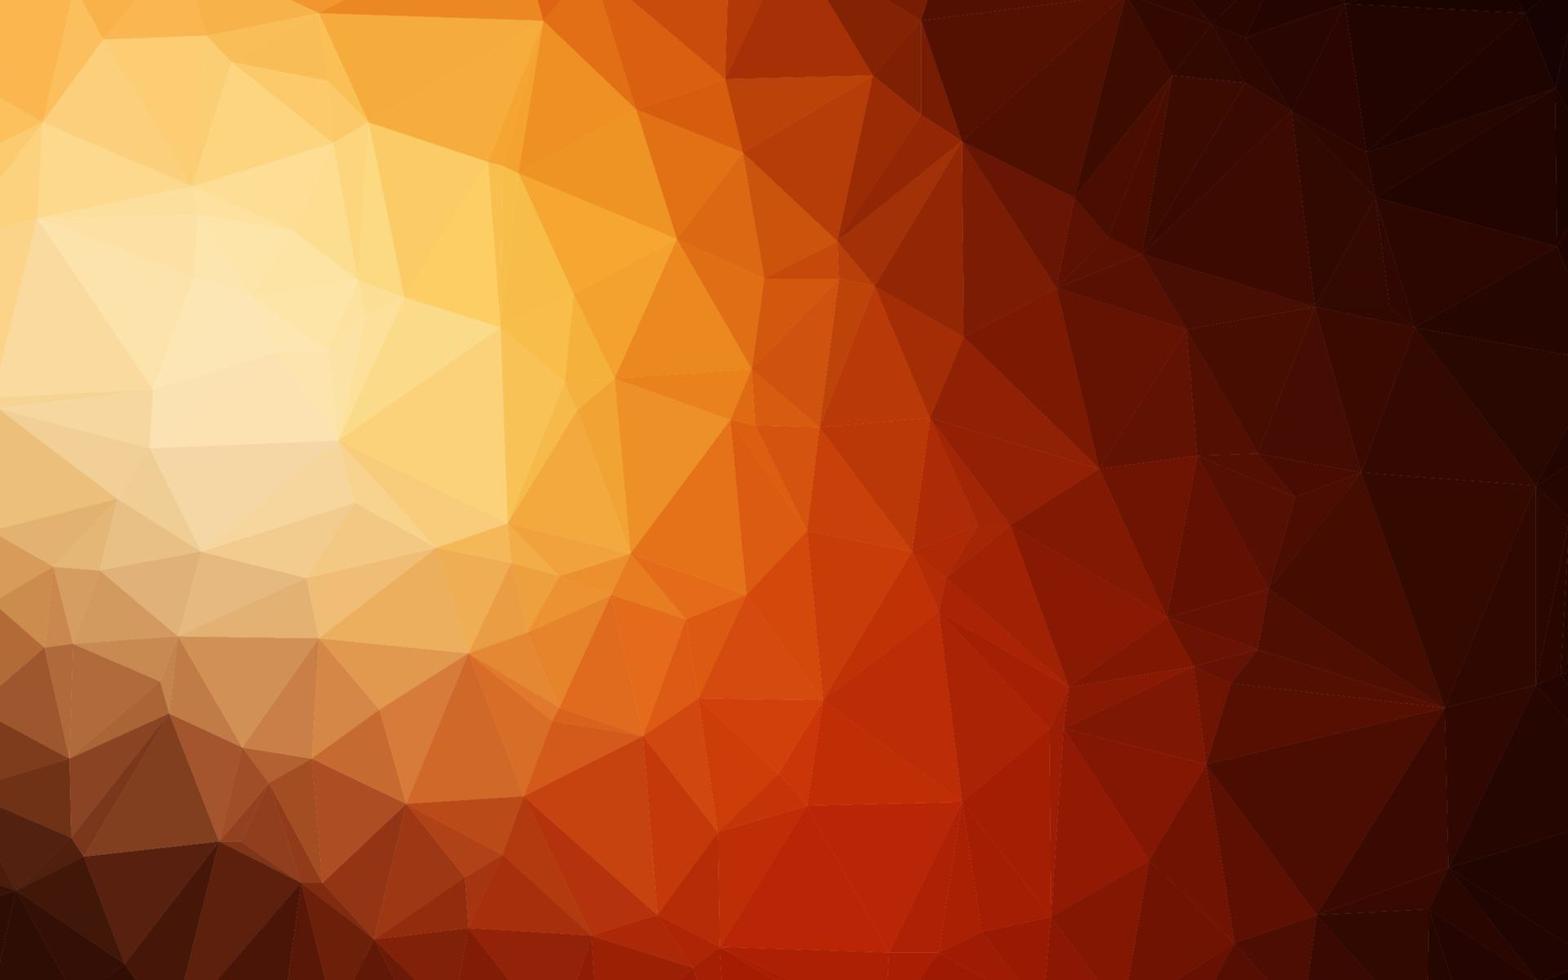 Dark Orange vector polygonal template.